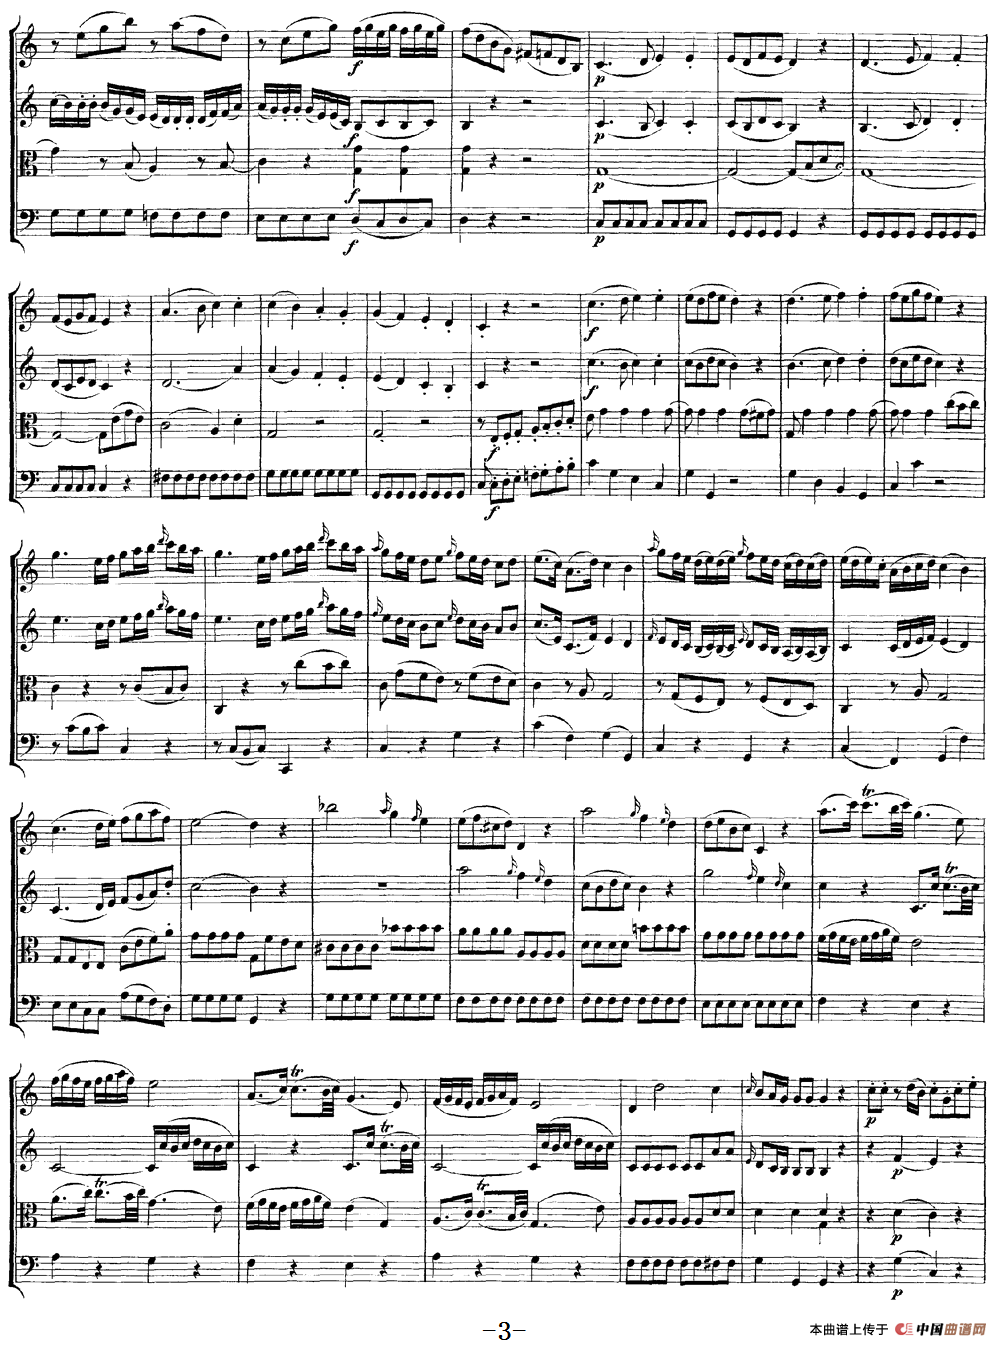 Mozart《Quartet No.4 in C Major,K.157》（总谱）